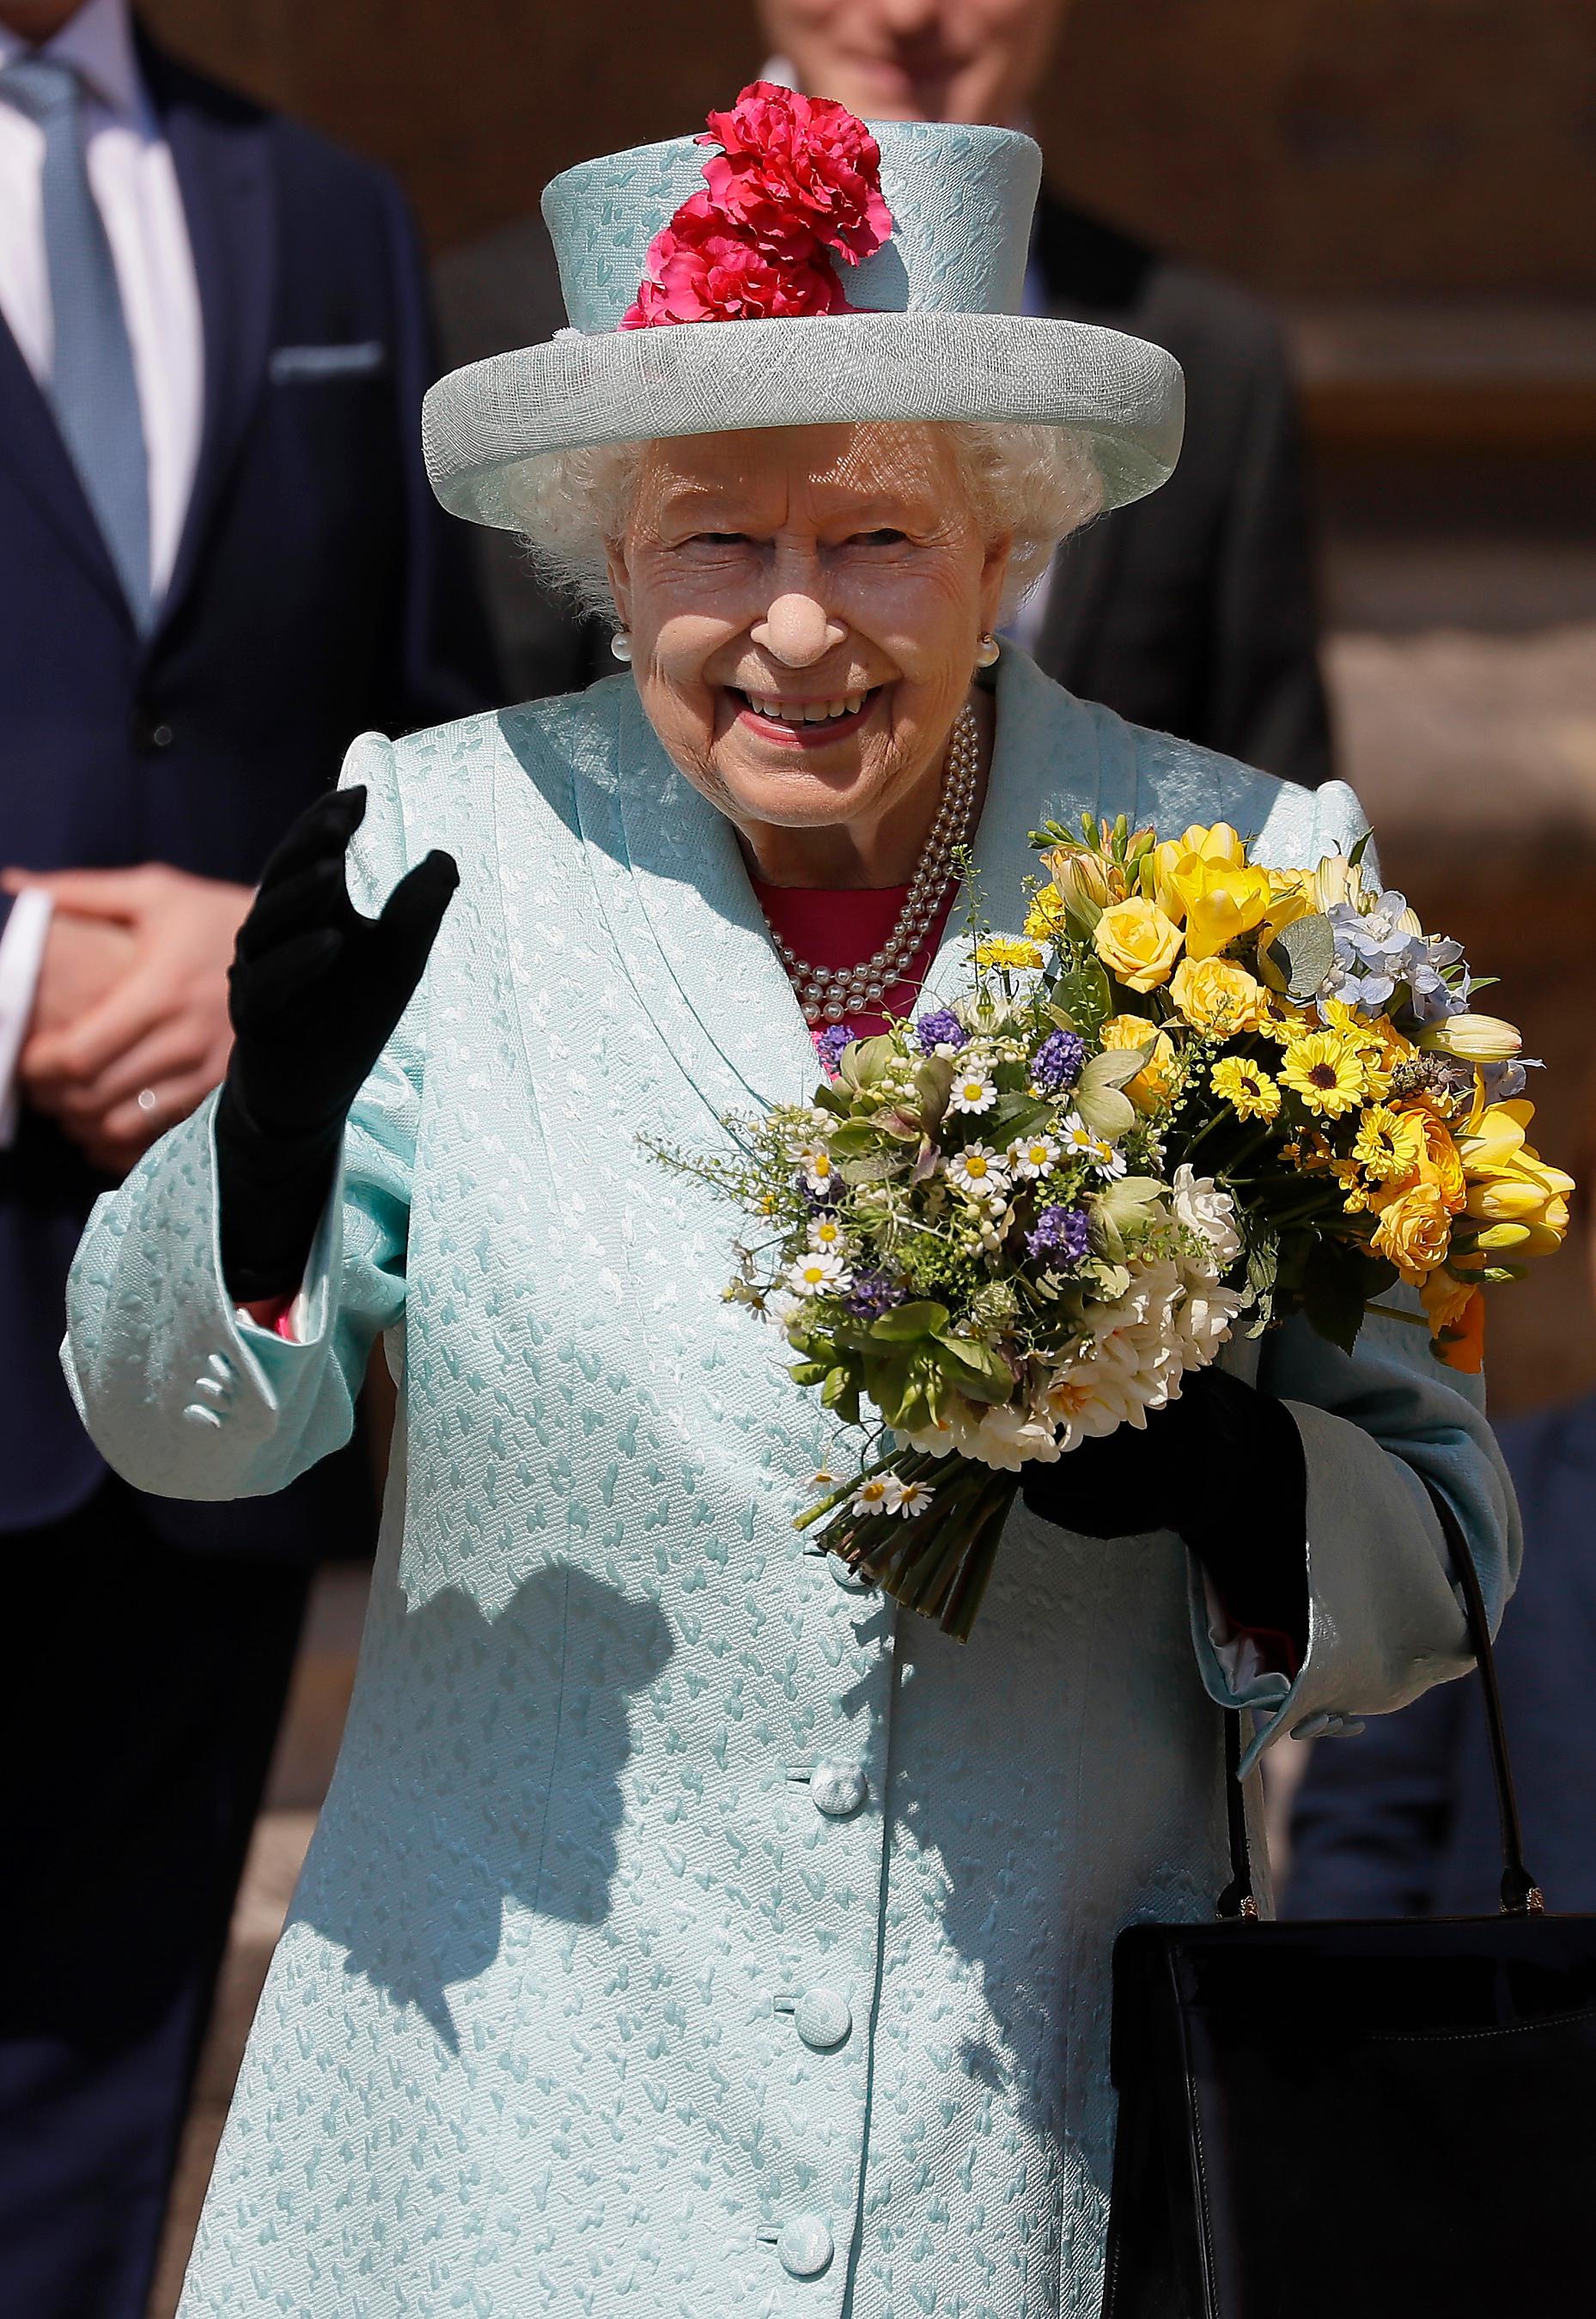 I går firade Elizabeth II sin 93:e födelsedag. Hon bar en hatt med blommor och under kappan hade hon en knallrosa klänning.